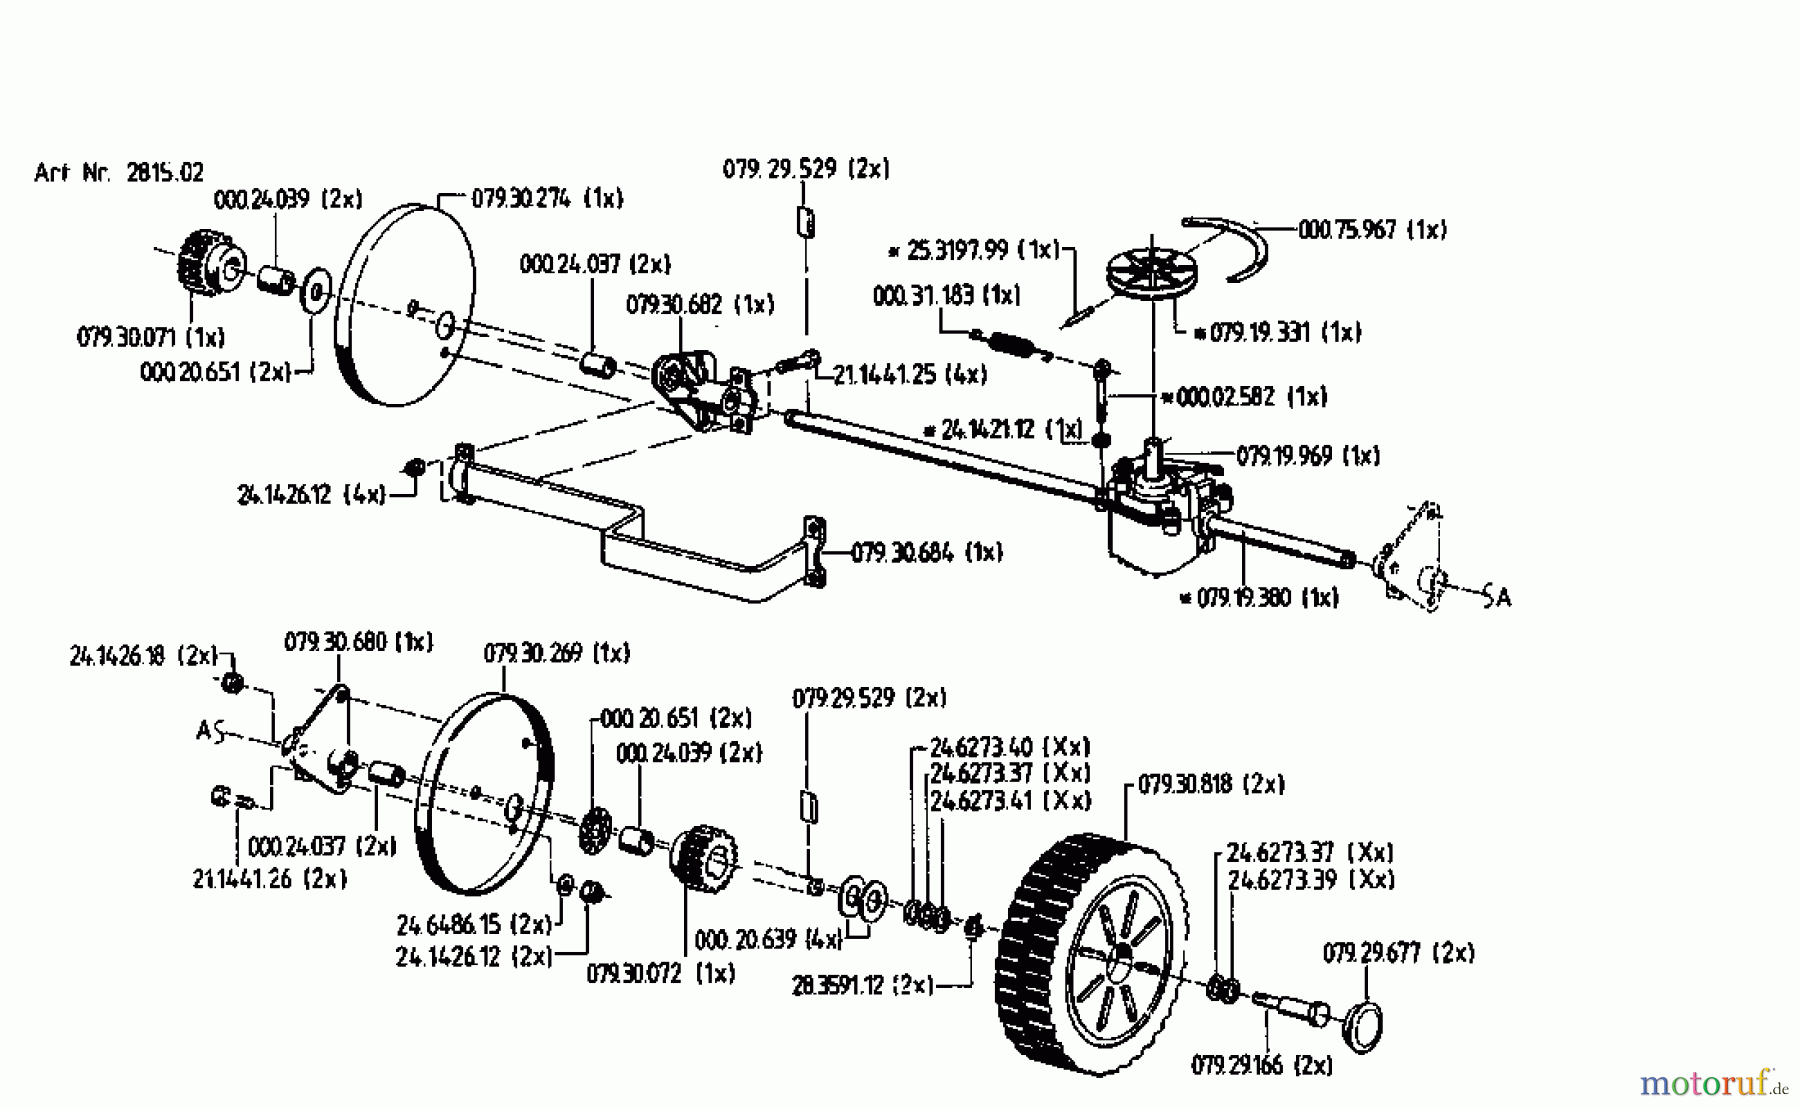  Gutbrod Petrol mower self propelled HB 48 REL 02815.02  (1993) Gearbox, Wheels